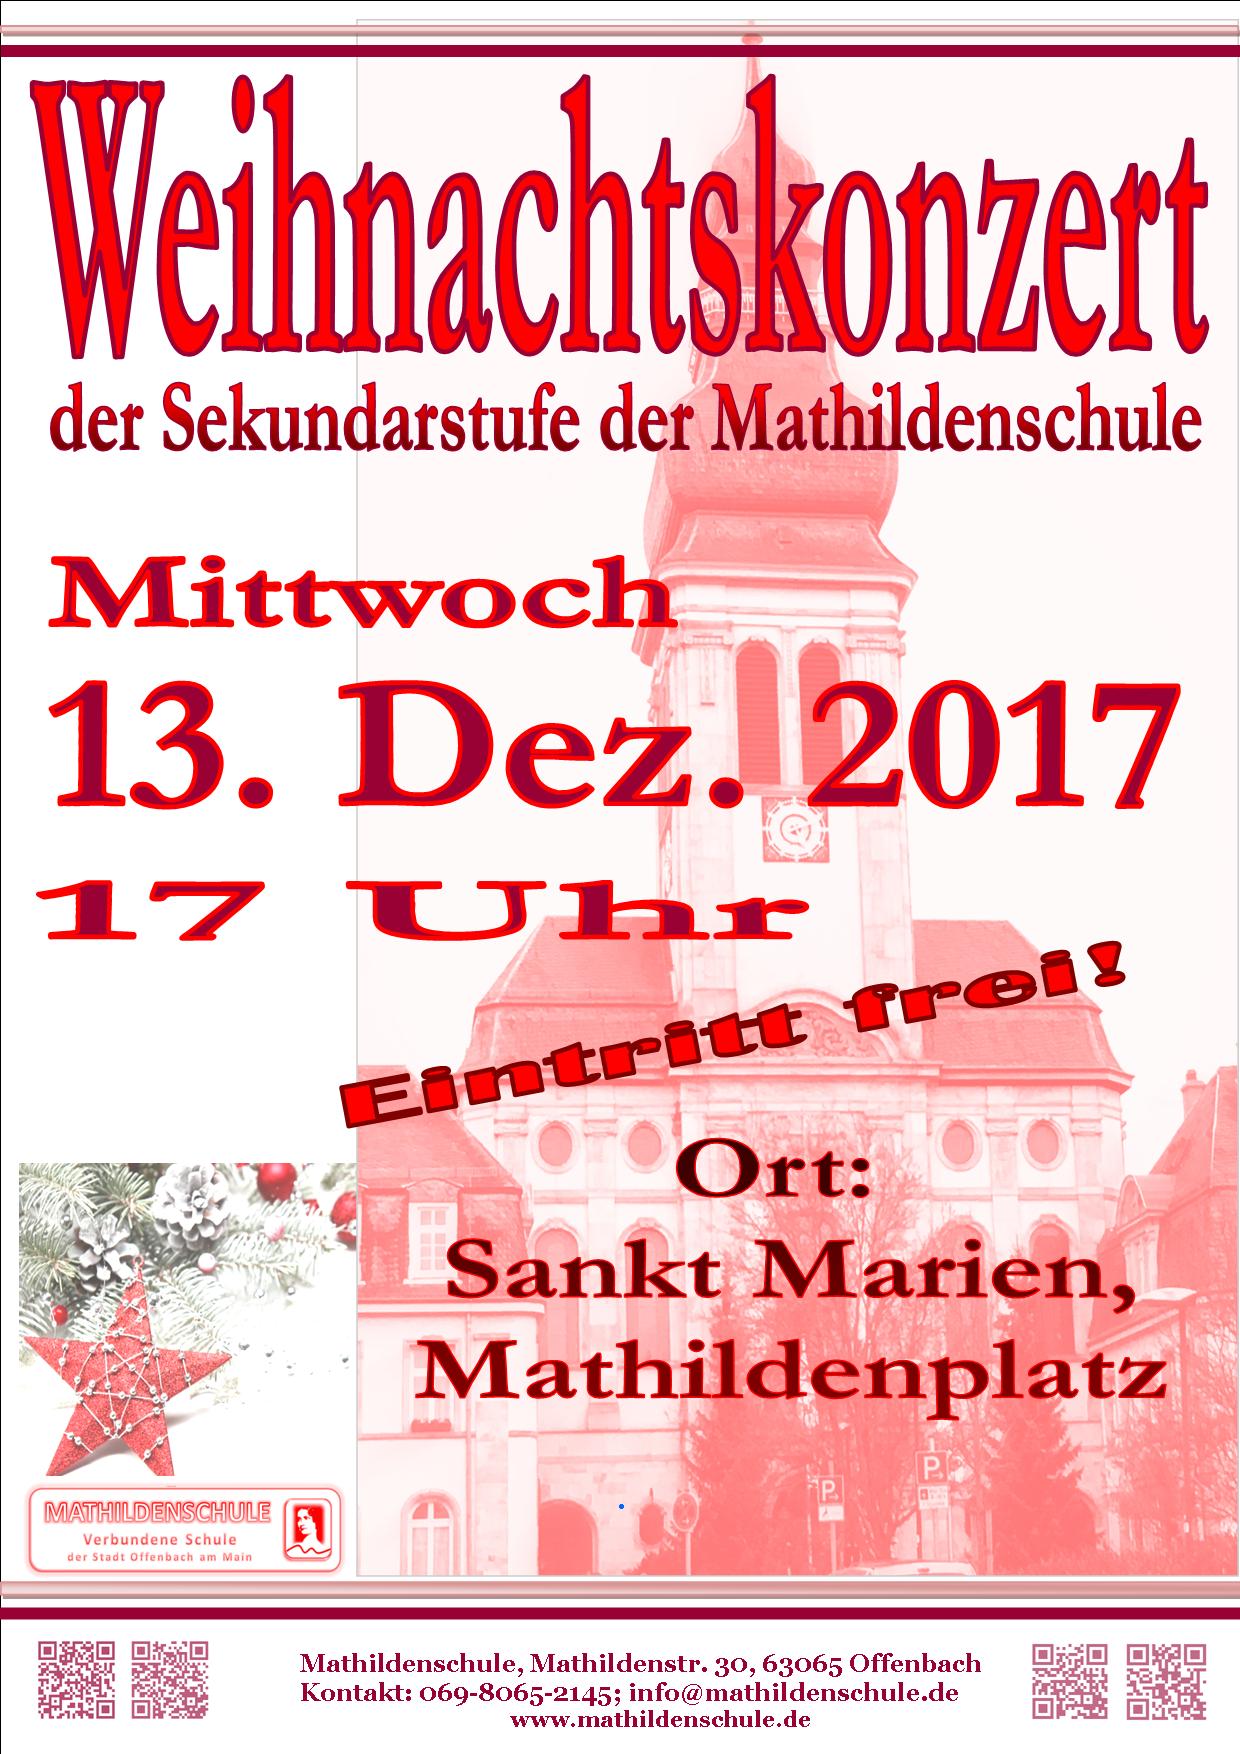 Weihnachtskonzert der Mathildenschule in der Marienkirche 2017 